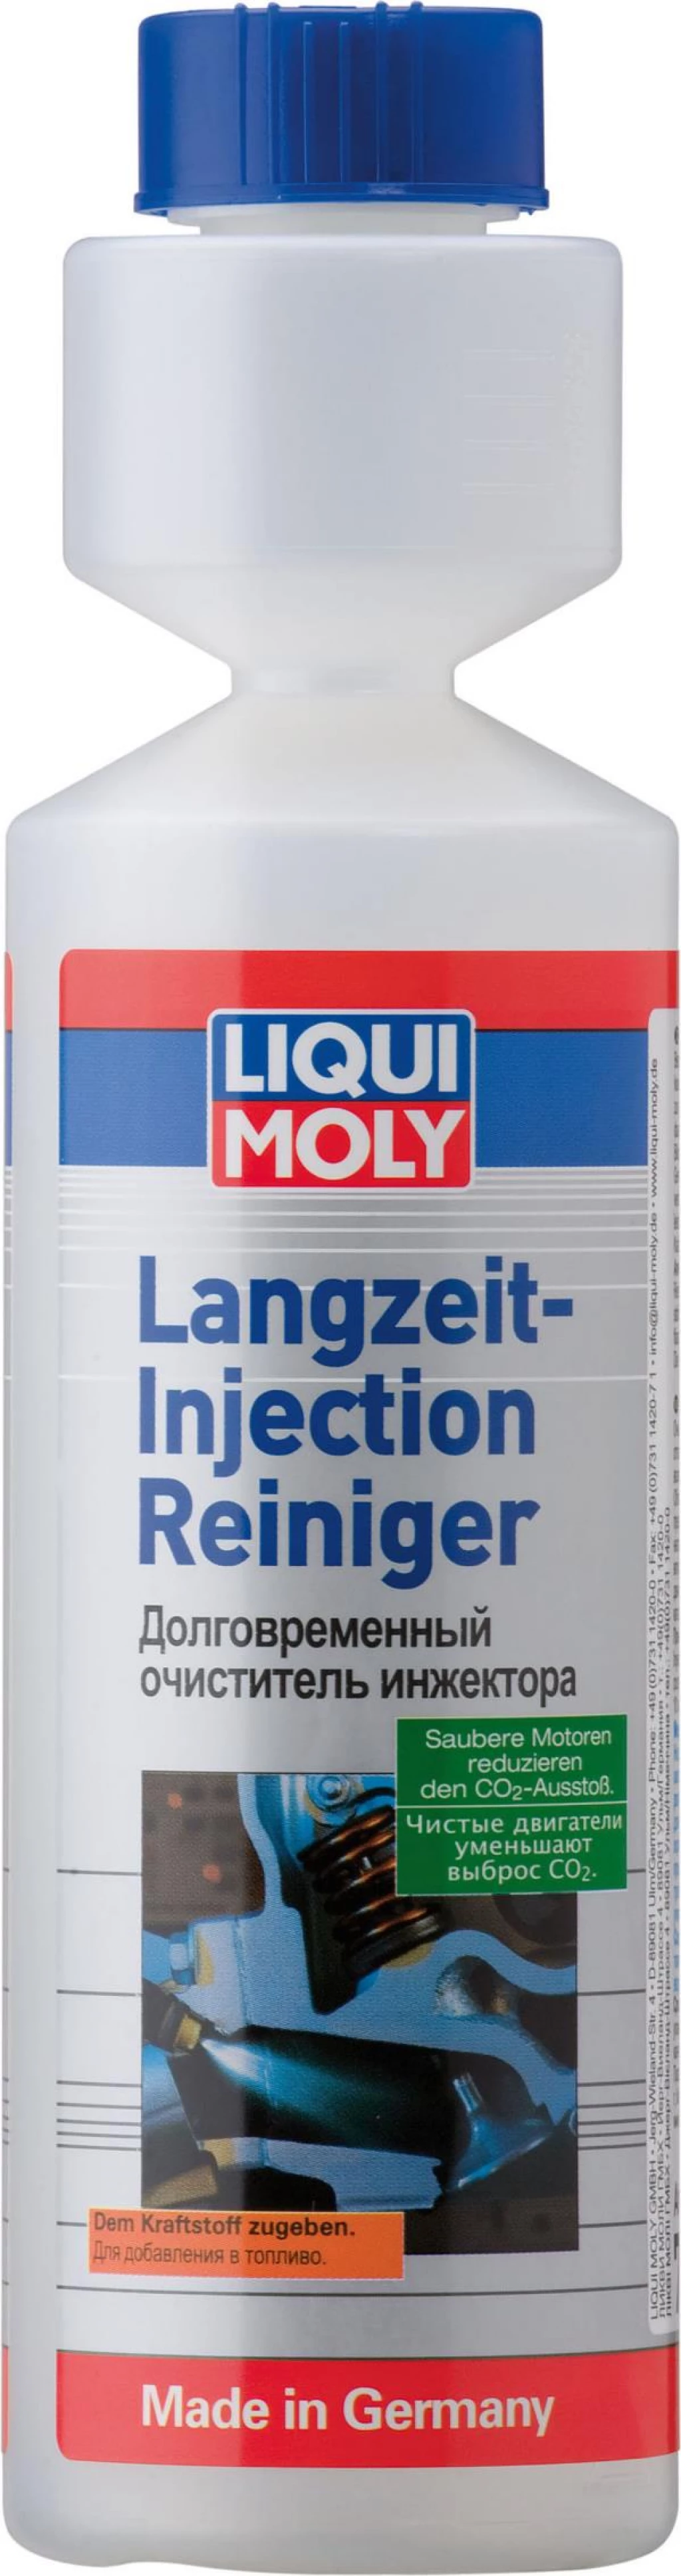 Очиститель инжекторов долговременный Liqui Moly Langzeit Injection Reiniger 250 мл